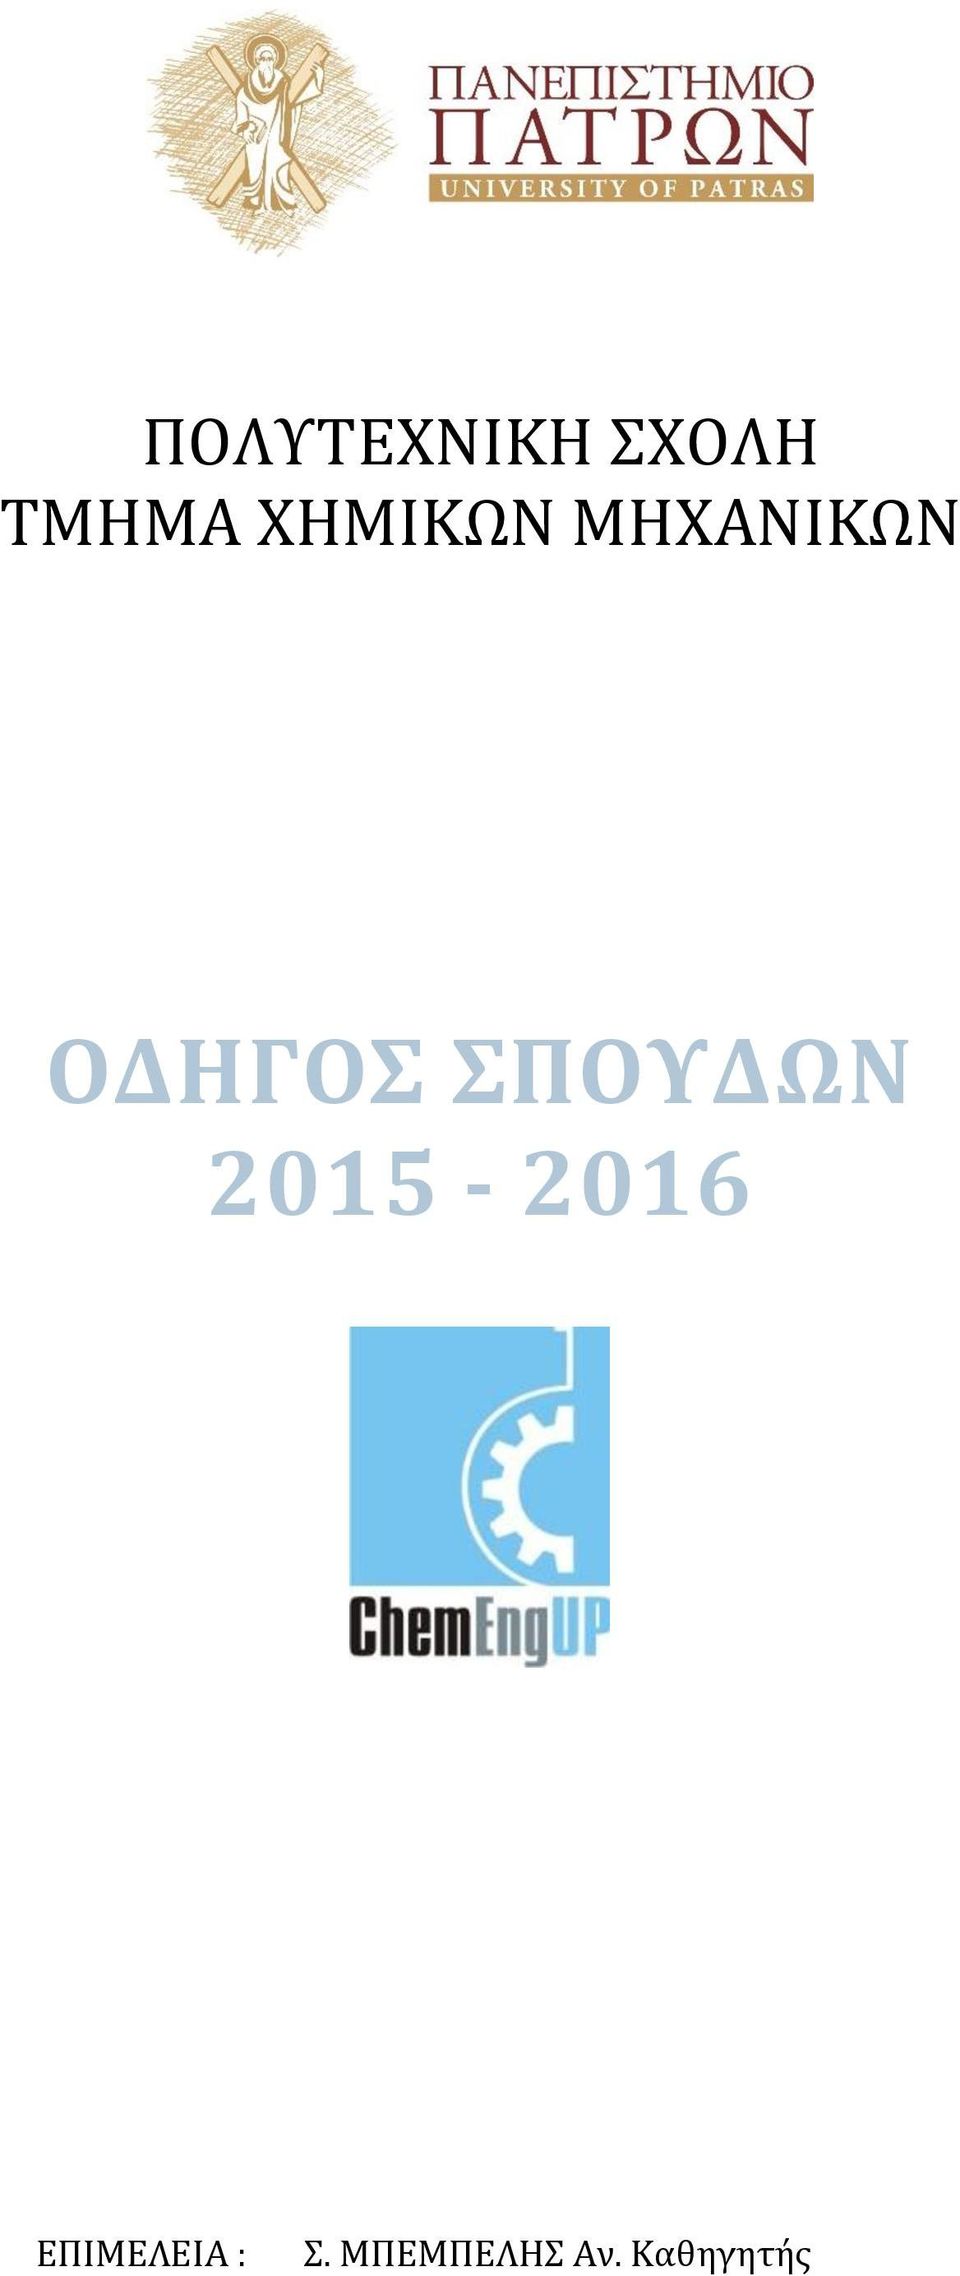 ΣΠΟΥΔΩΝ 2015-2016